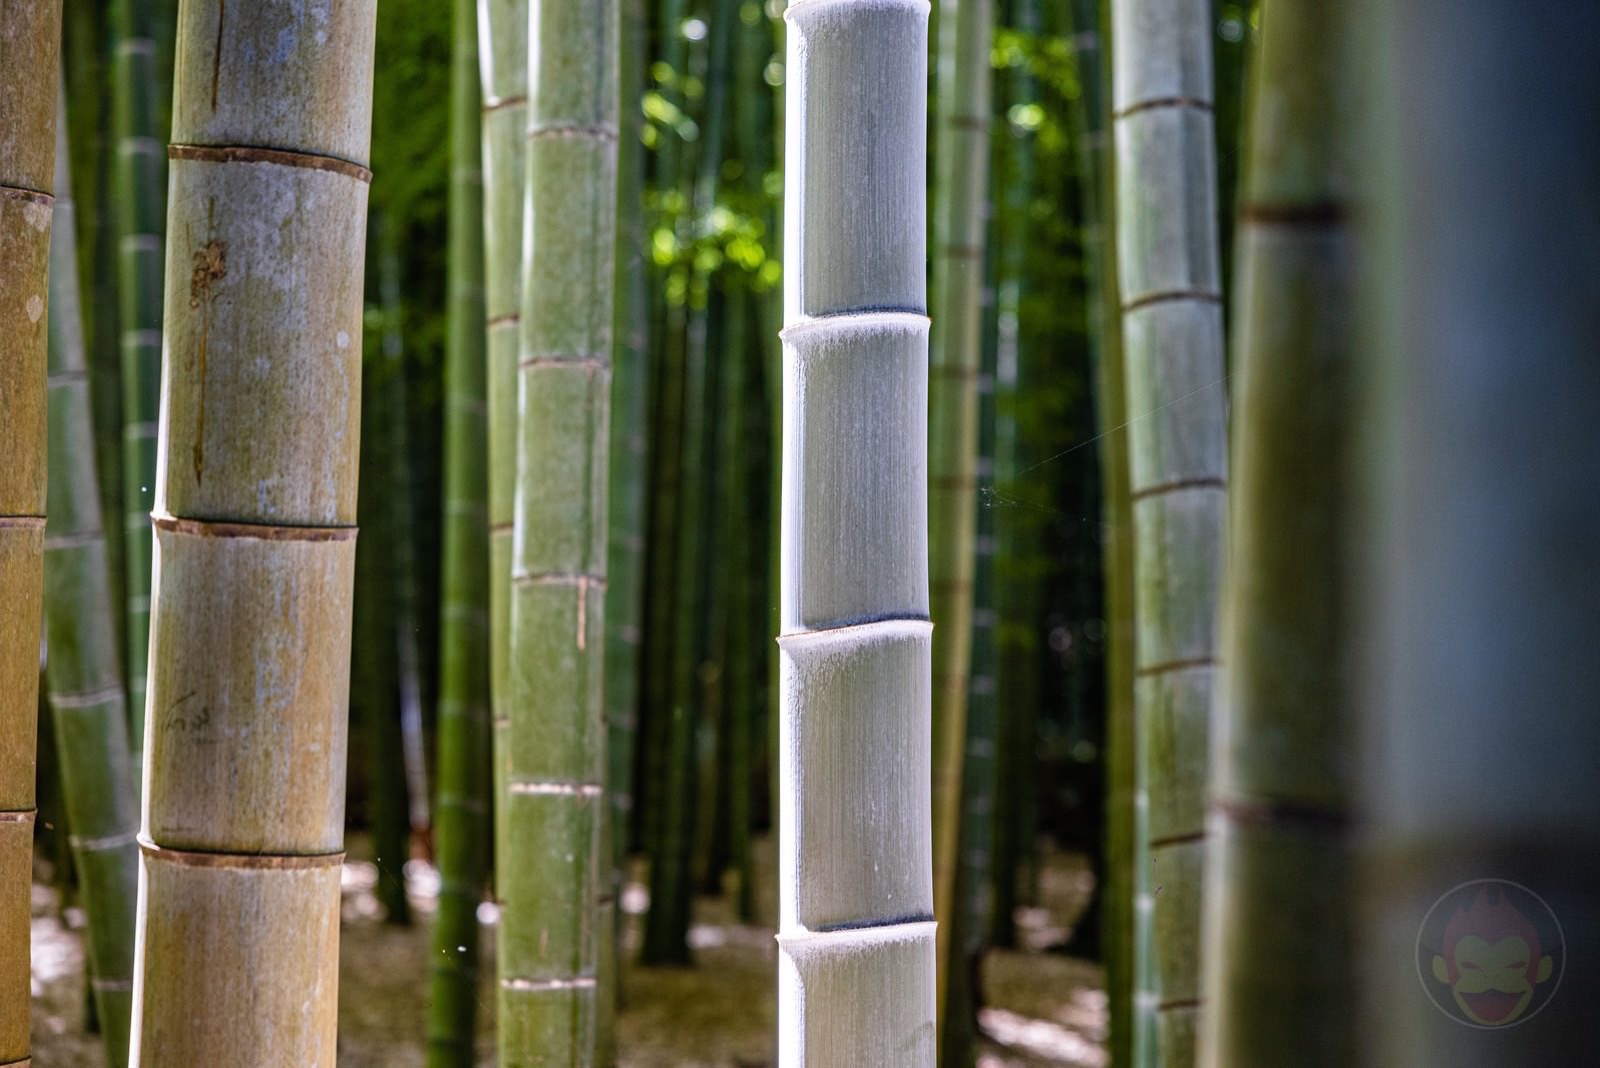 Kamakura Houkokuji Bamboo 01